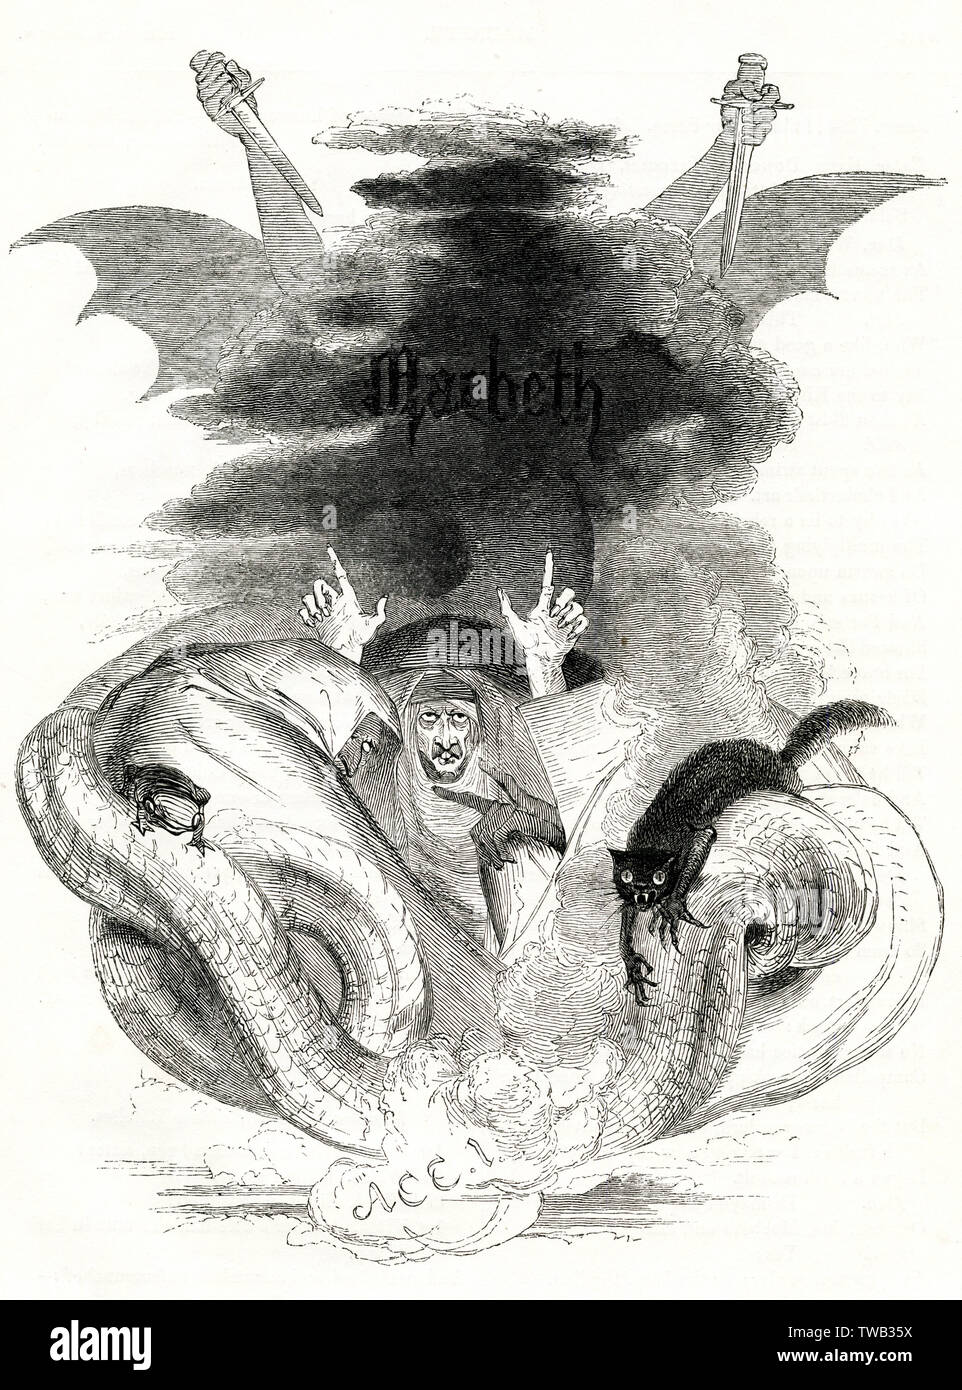 Illustration par Kenny Meadows pour Macbeth, par William Shakespeare. Illustration d'introduction de l'Acte I, avec les sorcières, les serpents, une grenouille et black cat. Date : 1840 Banque D'Images